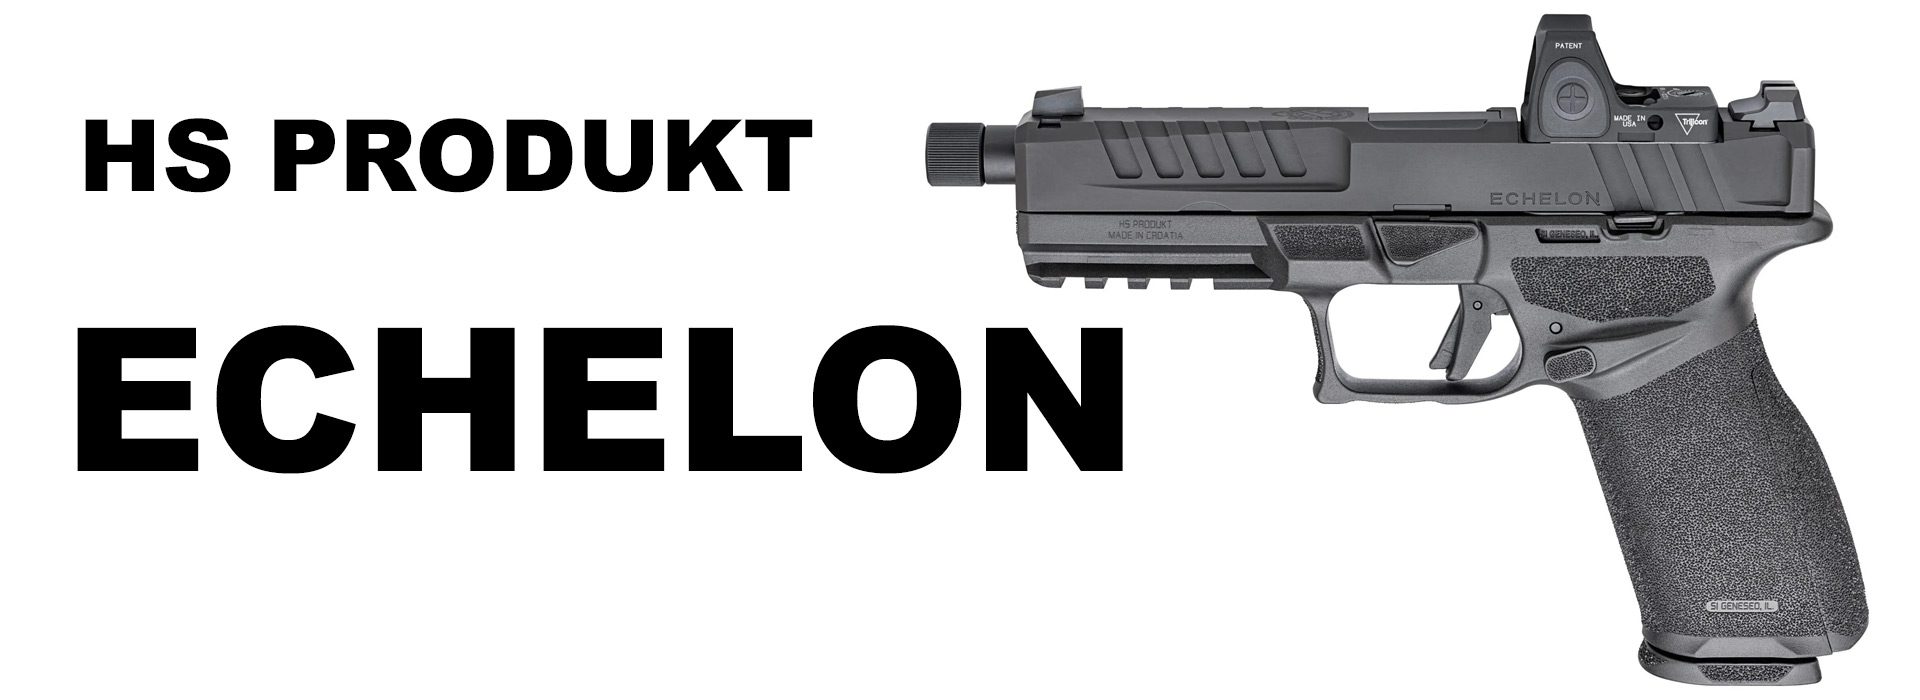 HS Produkt Echelon pistol